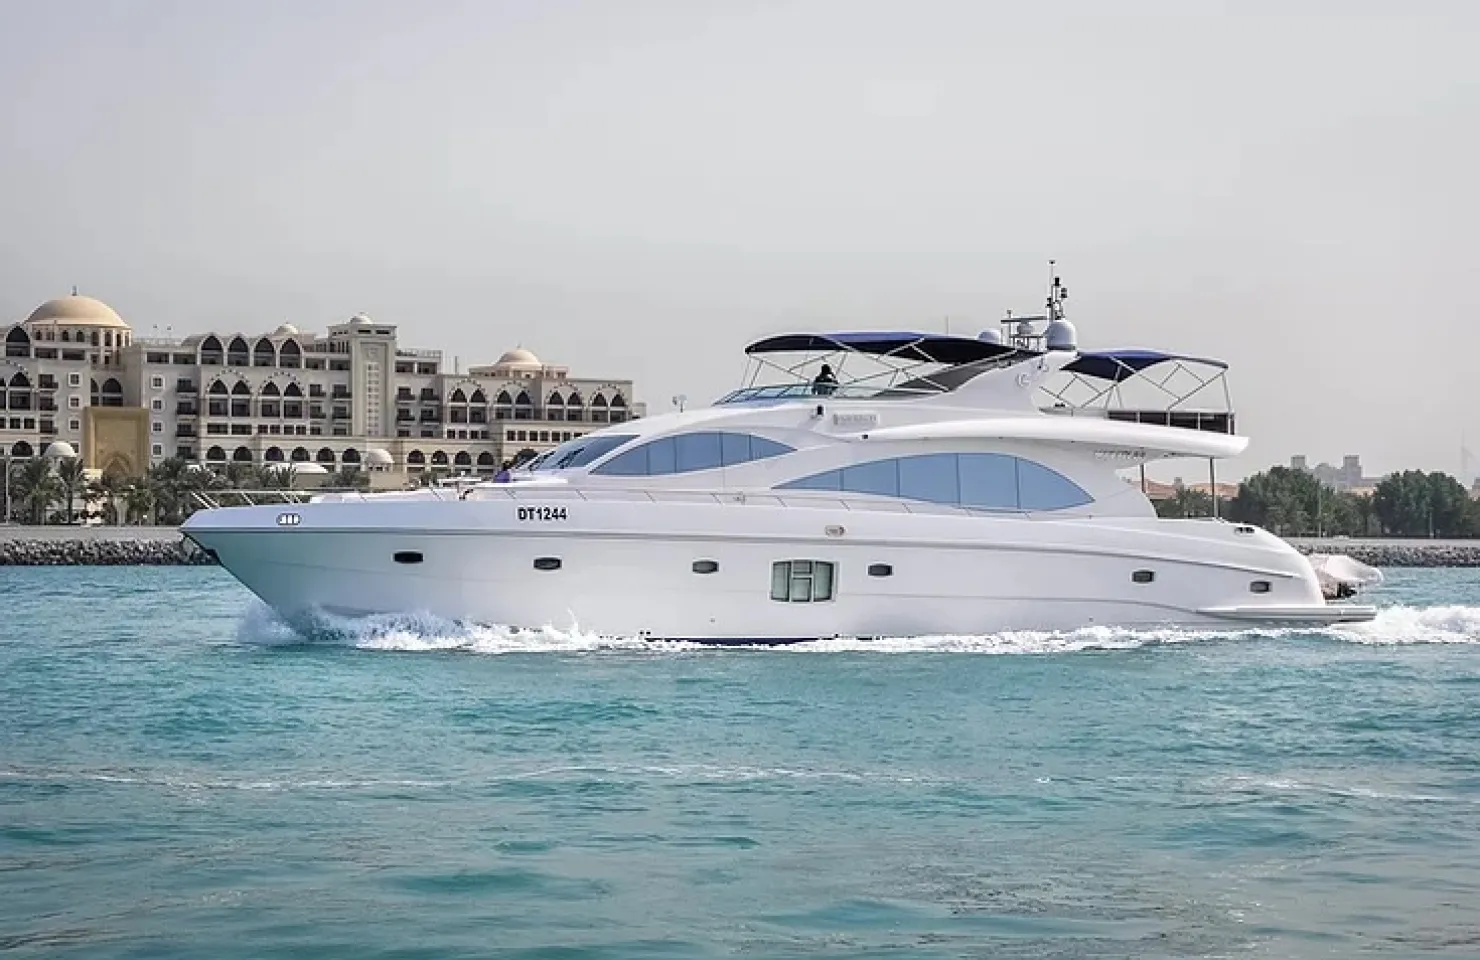 Super iate luxuoso disponível para charter no Dubai